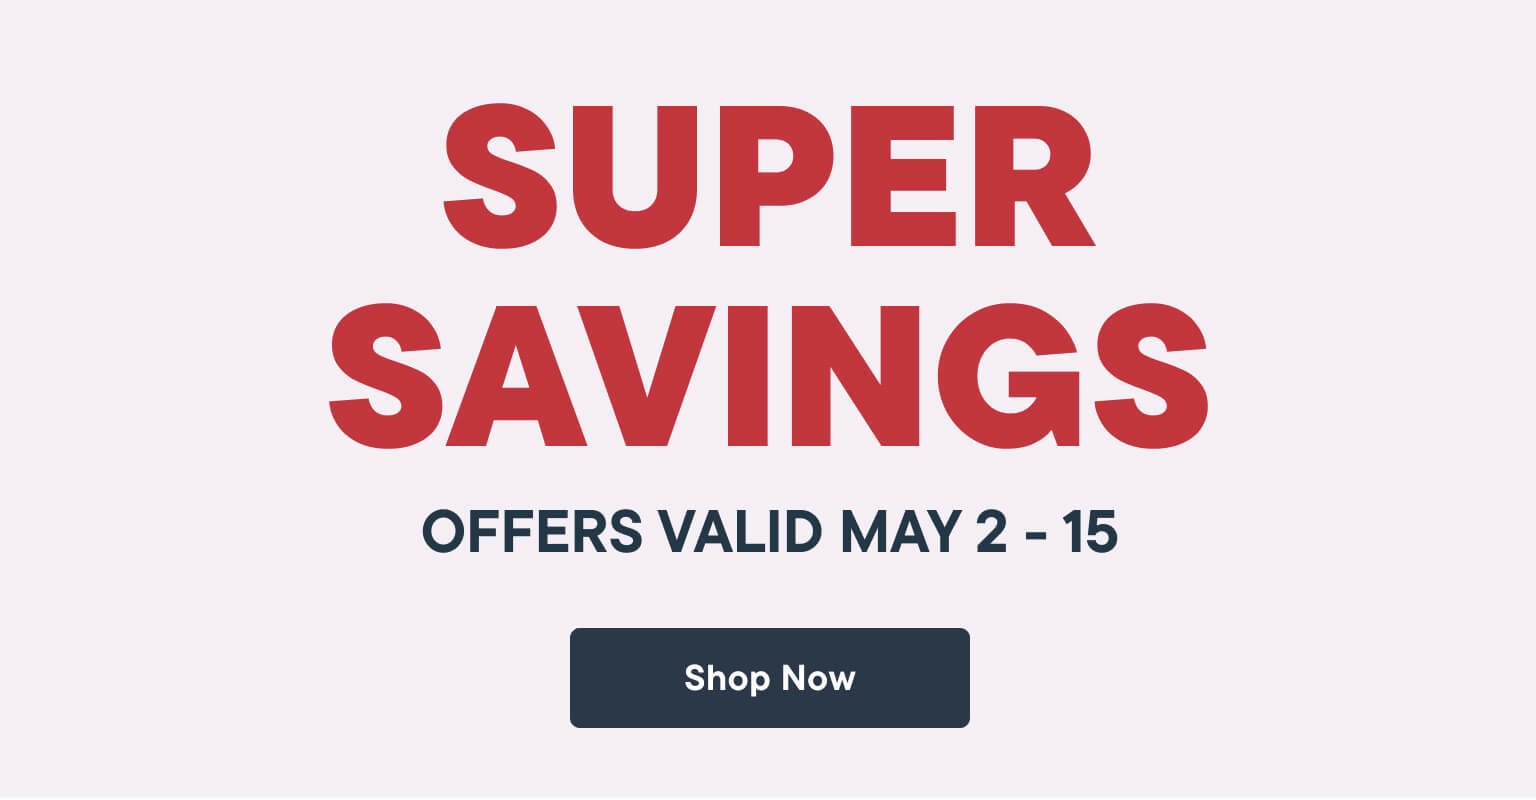 Super Savings. Shop Now